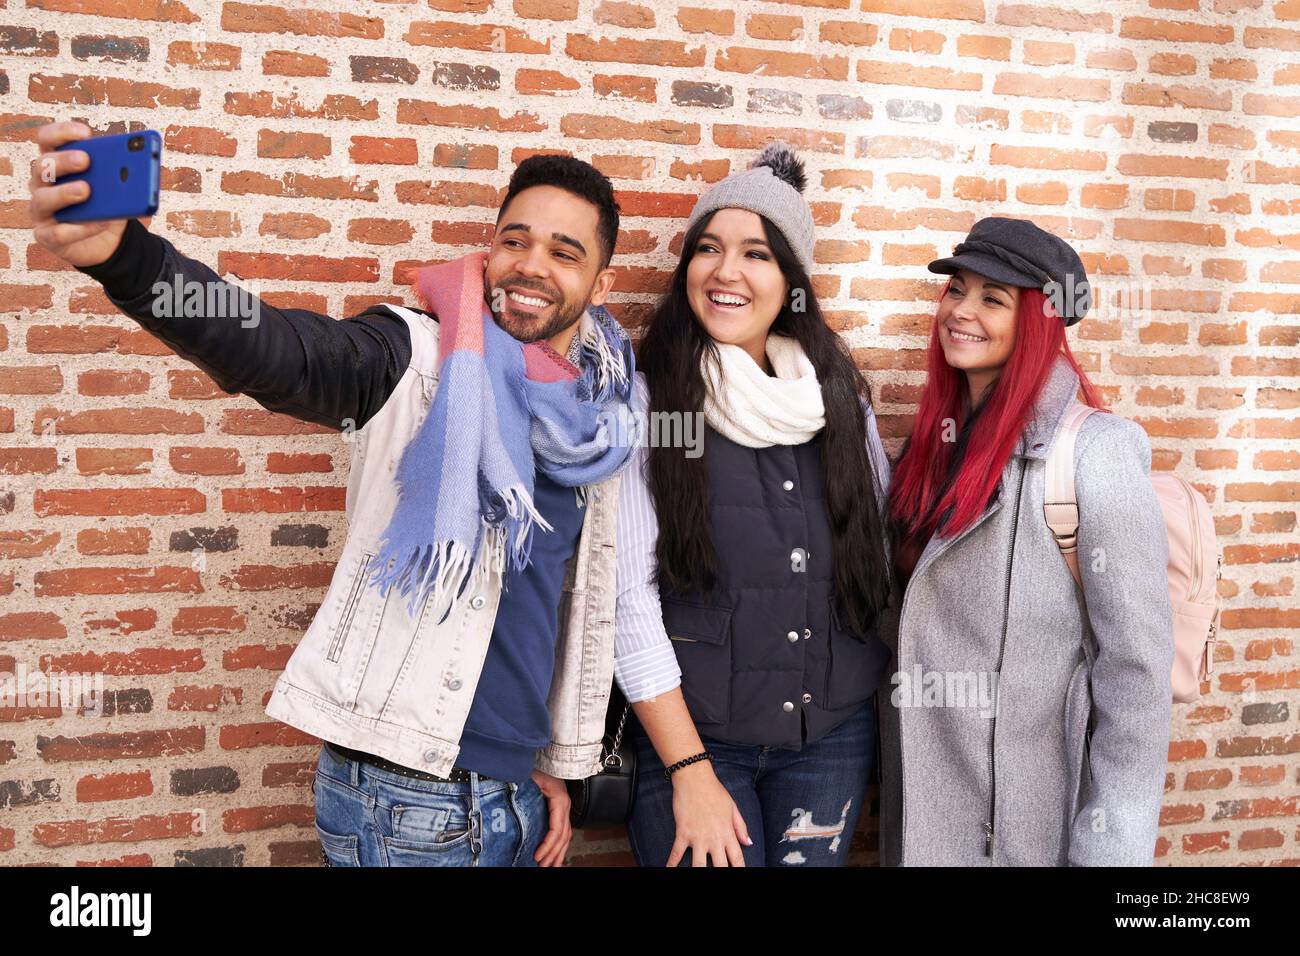 Amis multiraciaux positifs, hommes et femmes, dans des tenues stylées, souriant de façon éclatante tout en prenant un autoportrait sur un téléphone portable près du revêtement de briques Banque D'Images